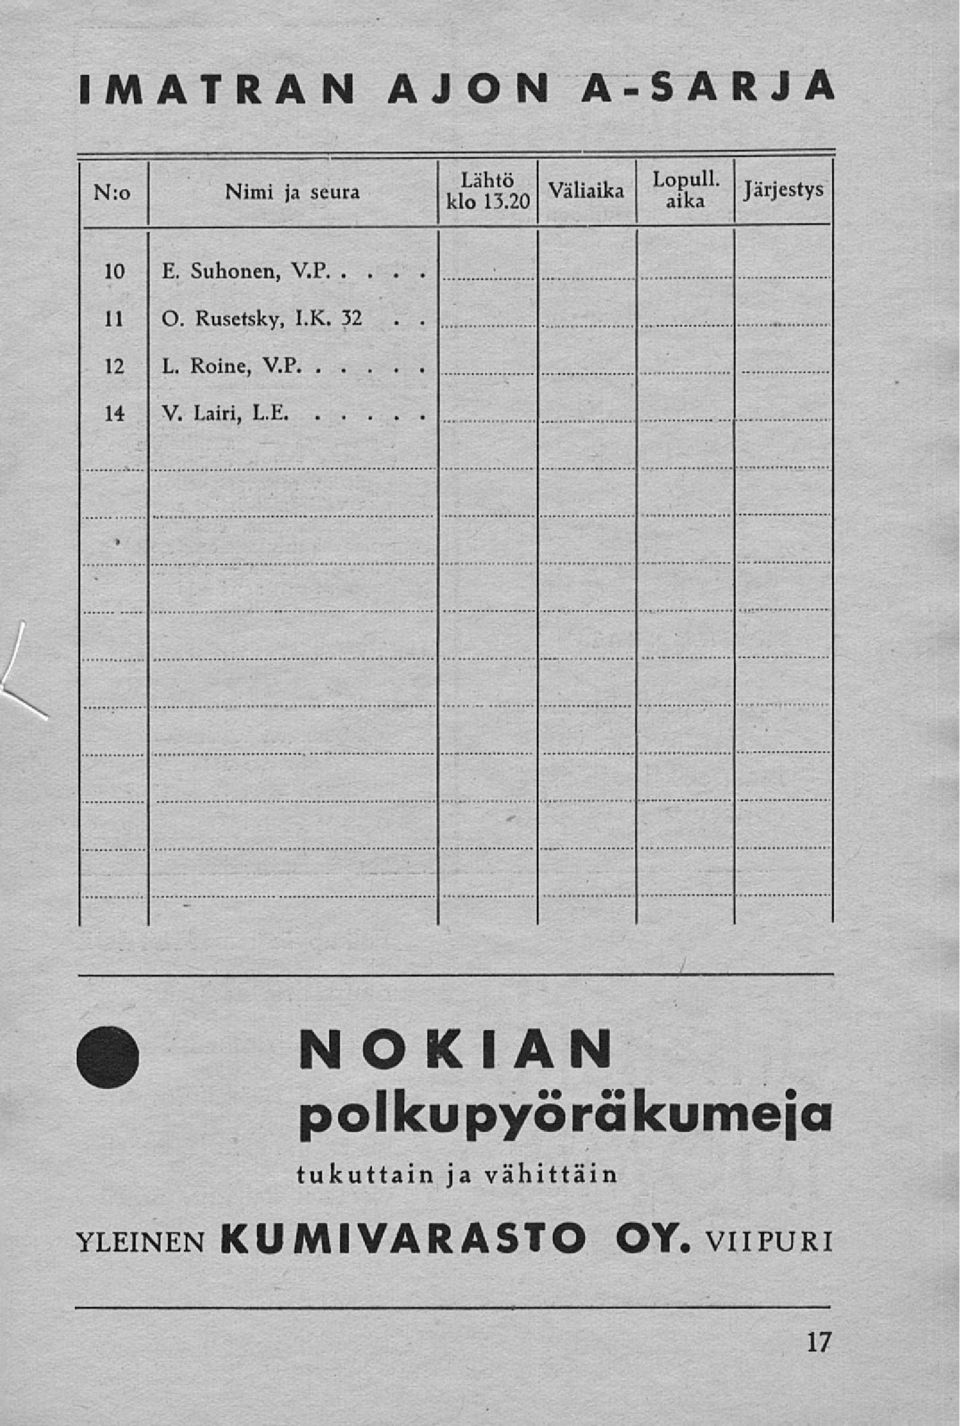 Rusetsky, I.K. 32 12 L. Roine, V.P.. 14 V. Lairi, L.E.